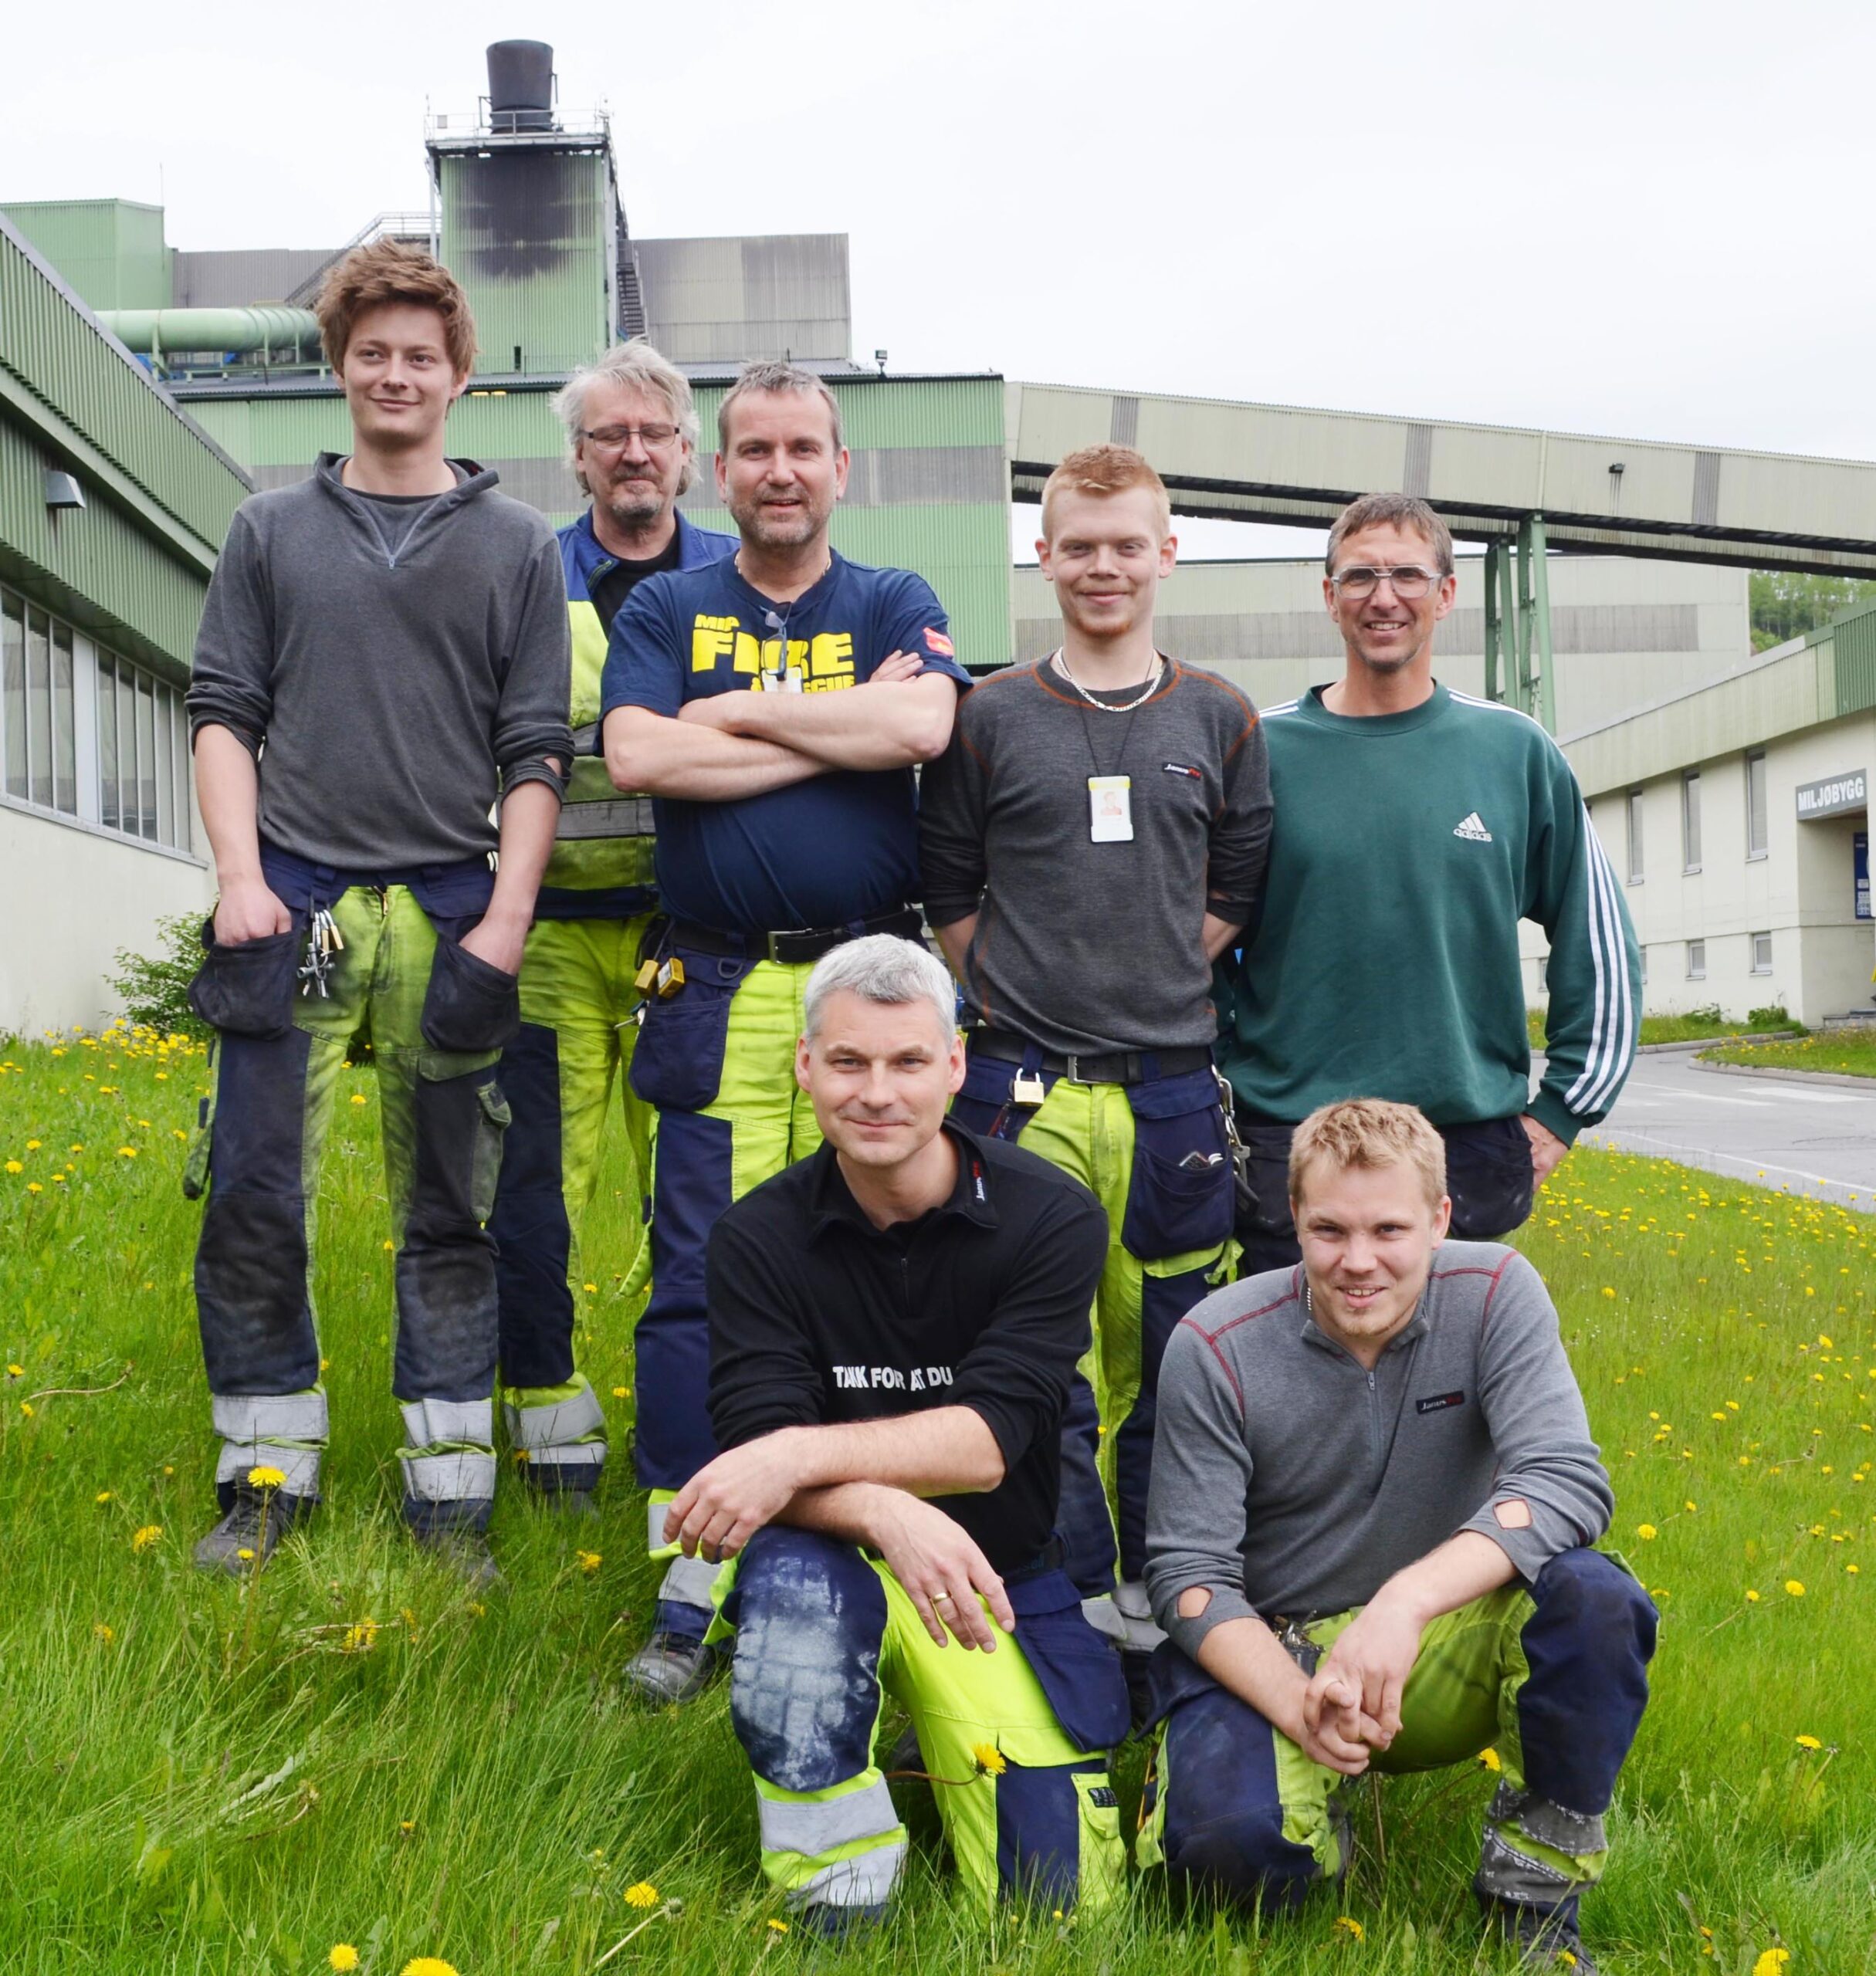 Bak fra venstre: Jan Nordhaug (lærling), Rune Pettersen, Kjell Kristiansen, Martin Hollum, Idar Mohaug. Foran fra venstre: Cato Jensen og Robin Hansen. To ansatte ved avdelingen var ikke til stedet da bildet ble tatt.